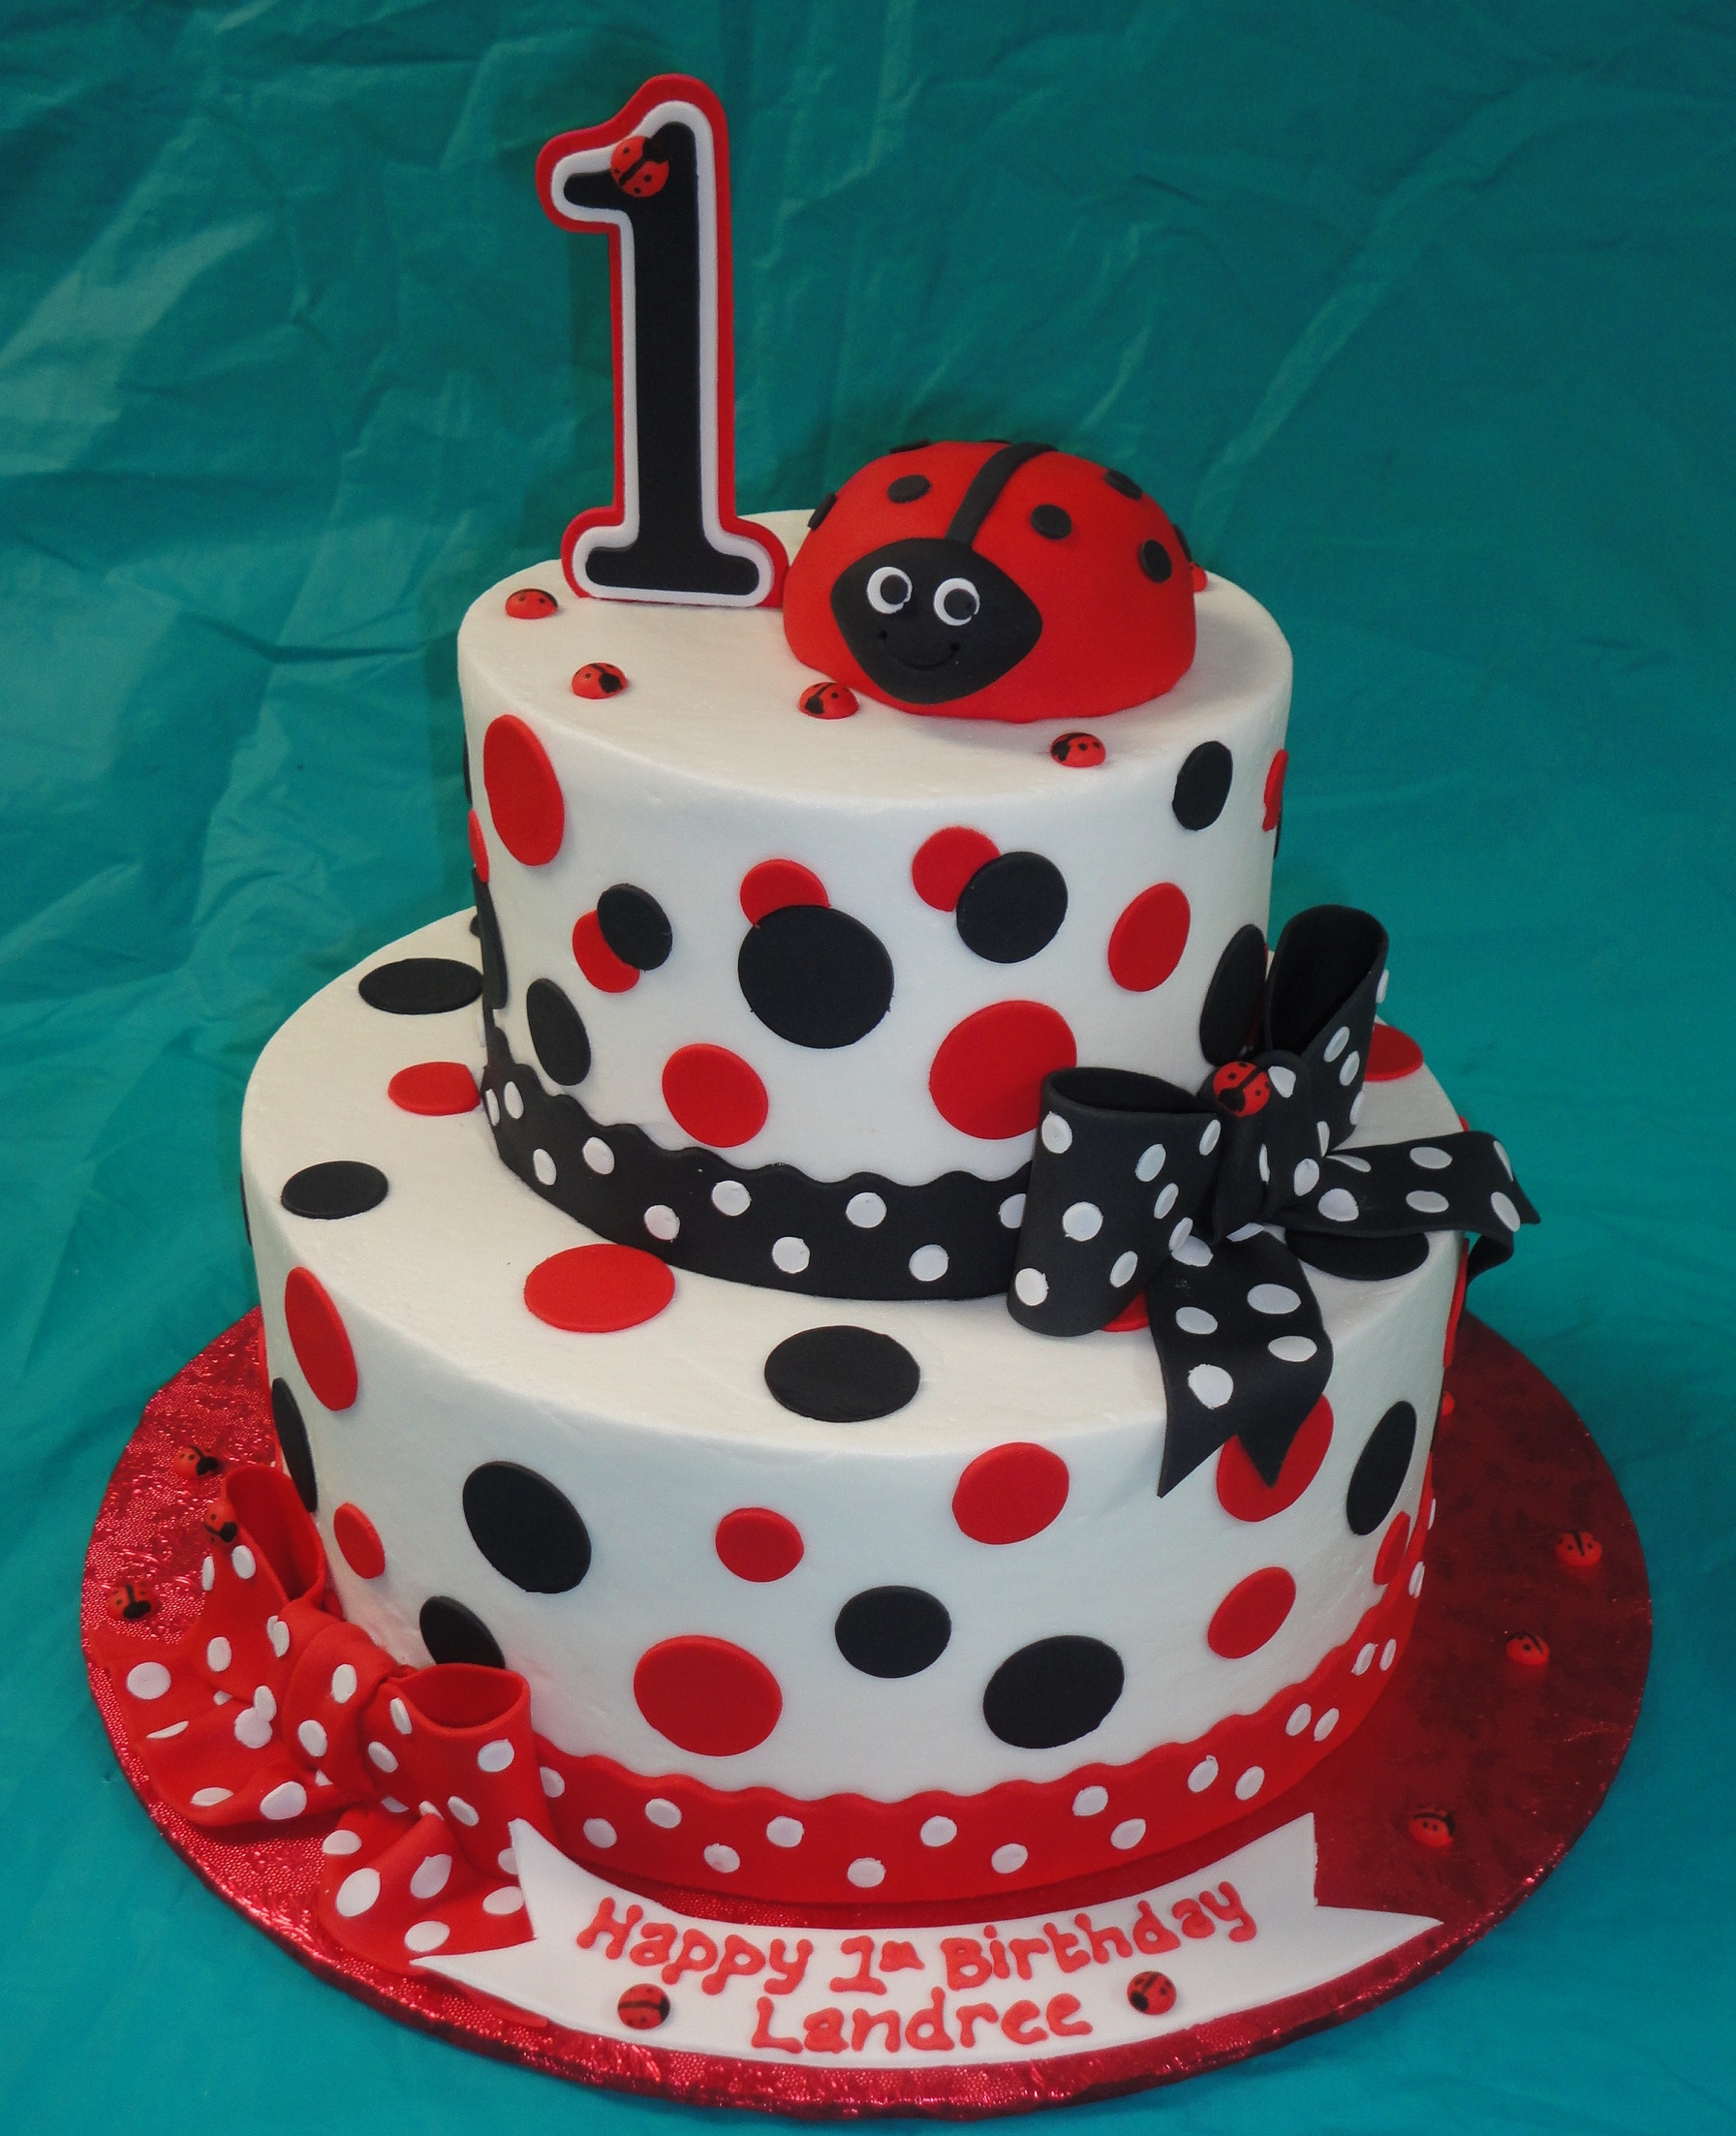 Birthday Cake Decorations
 Ladybug Cakes – Decoration Ideas